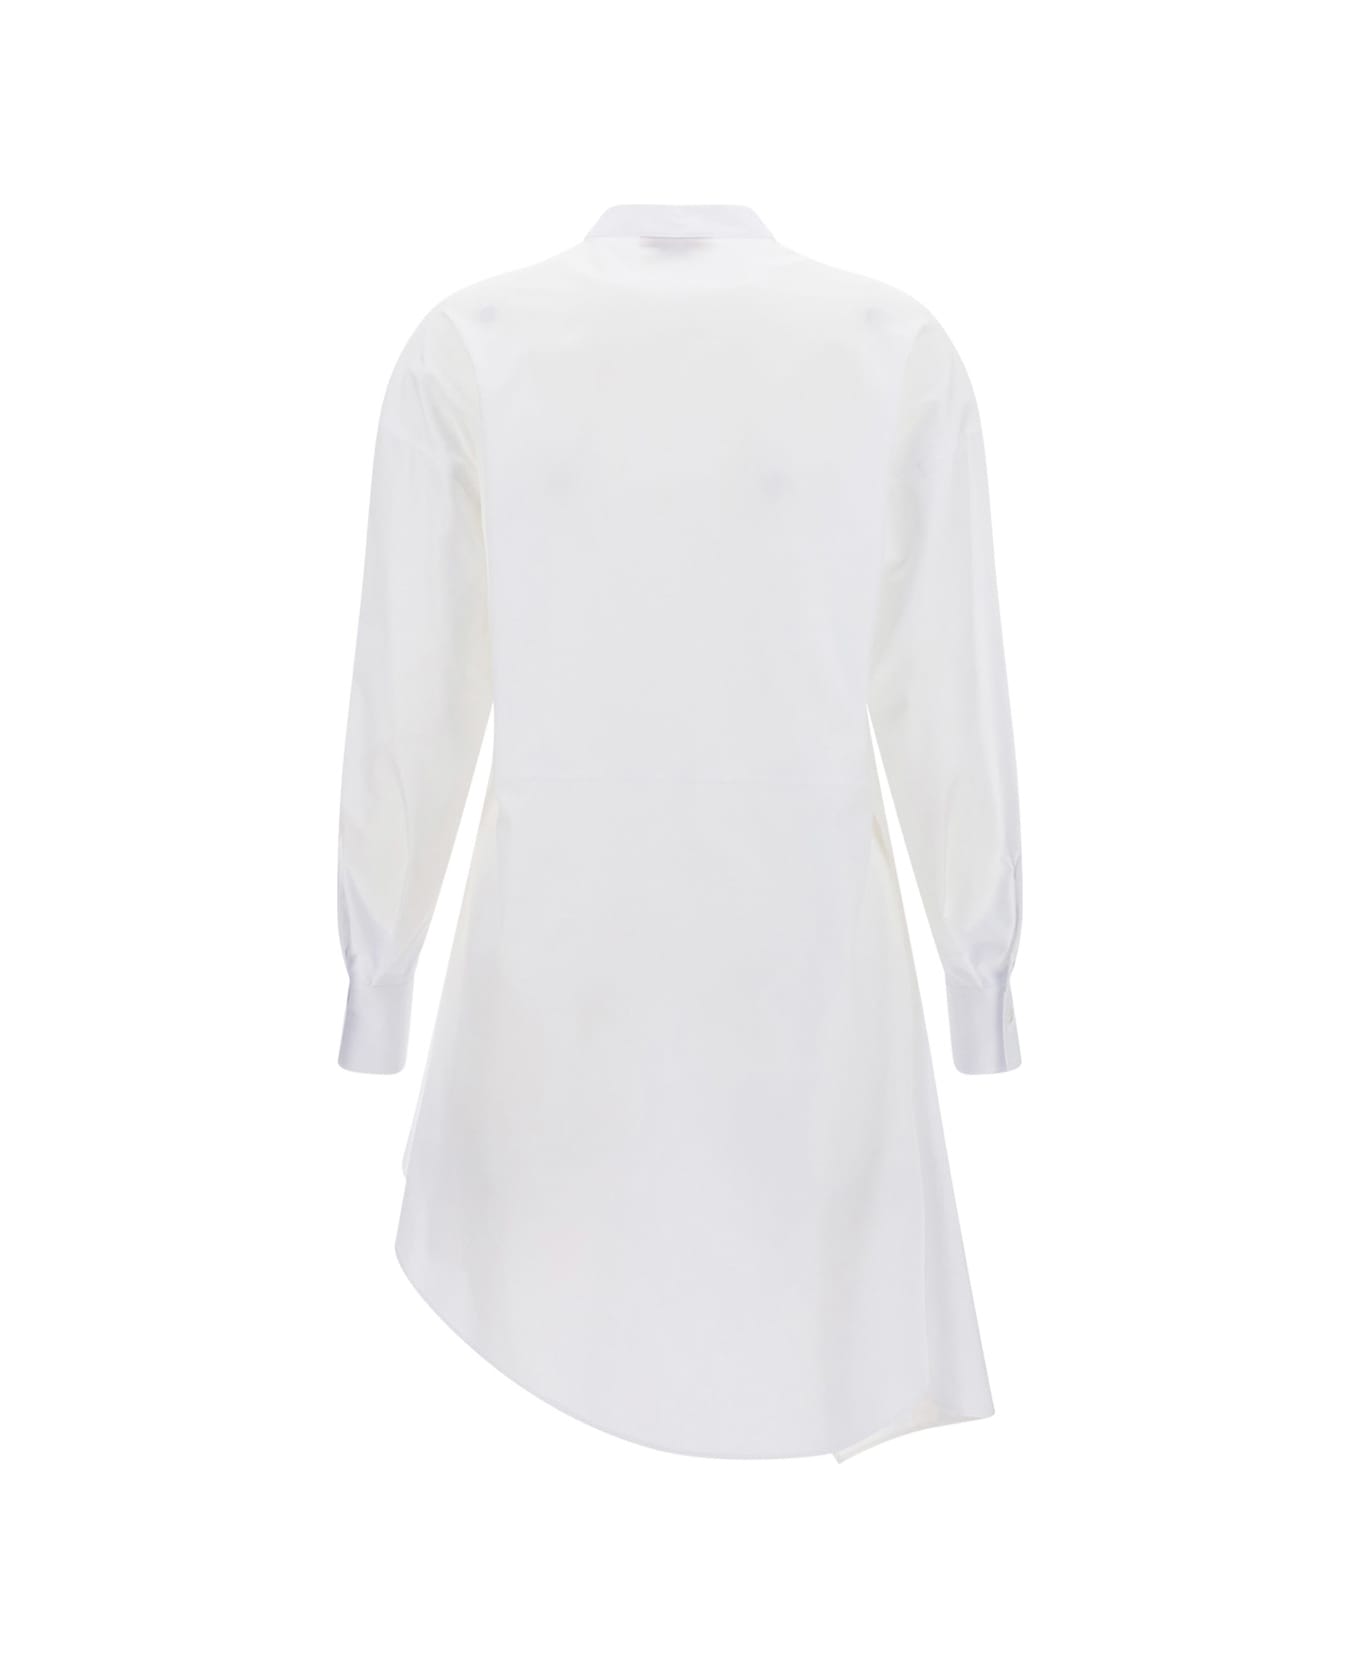 Alexander McQueen Shirt - Optical white